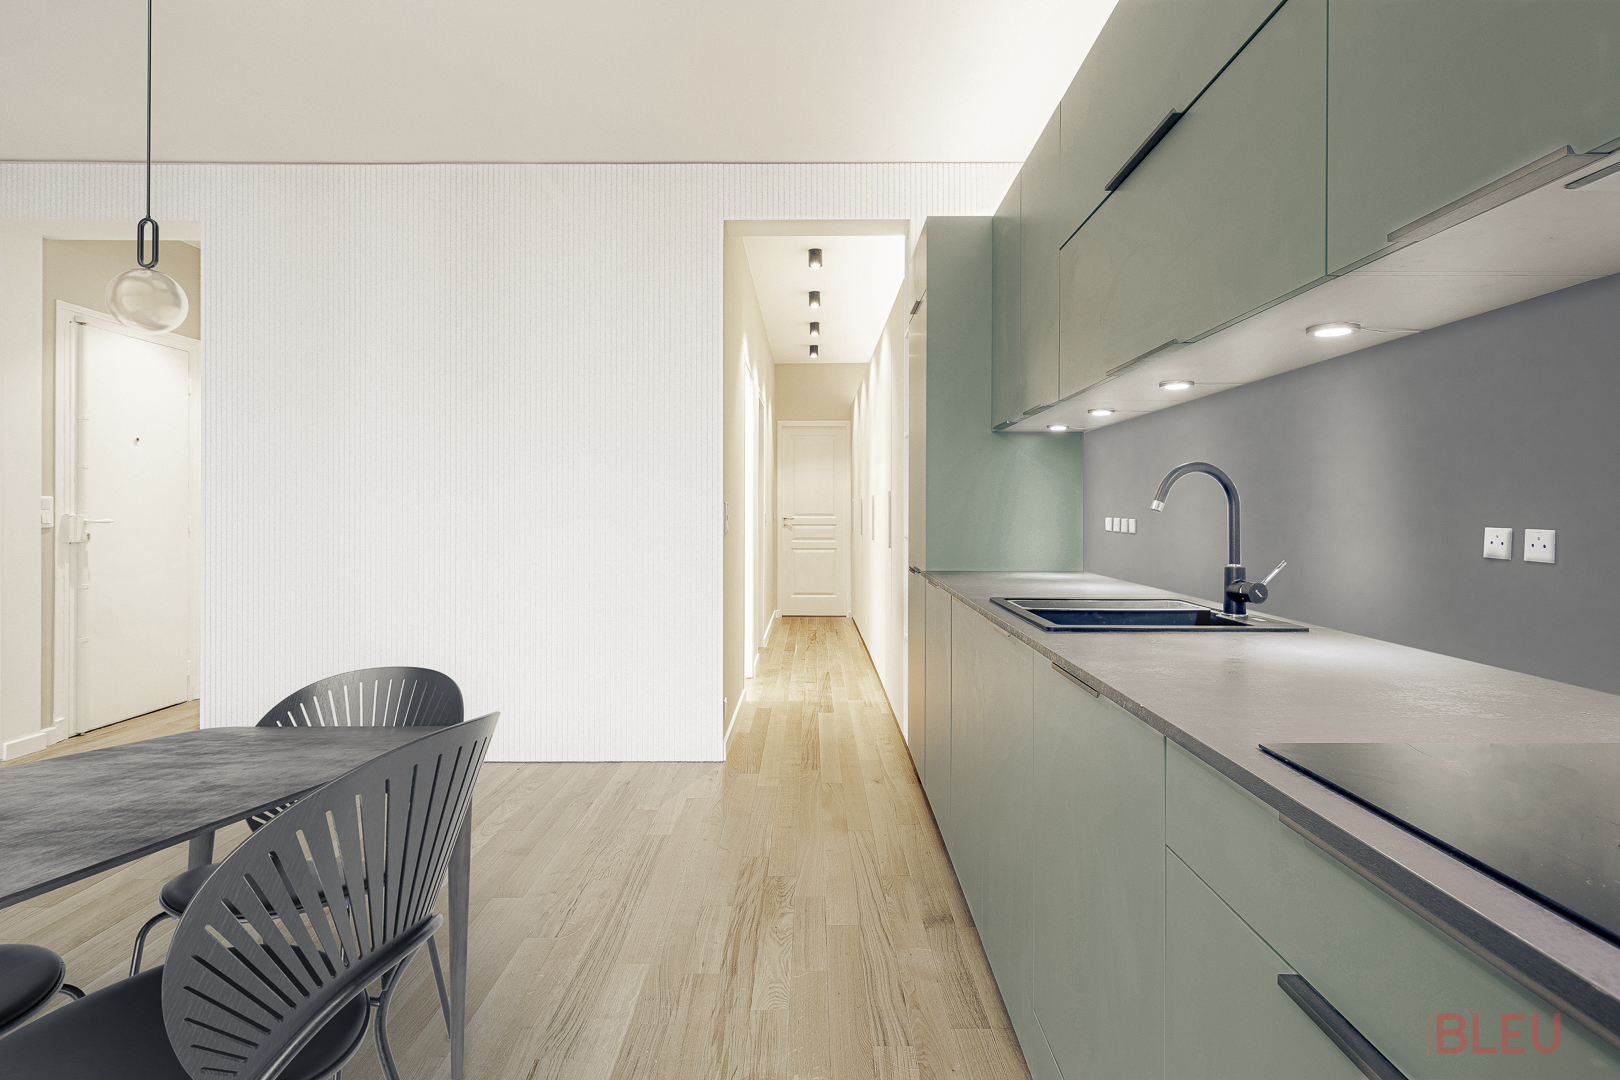 Cuisine moderne avec parquet clair et rangements intégrés dans un projet de rénovation appartement paris par le cabinet architecture paris